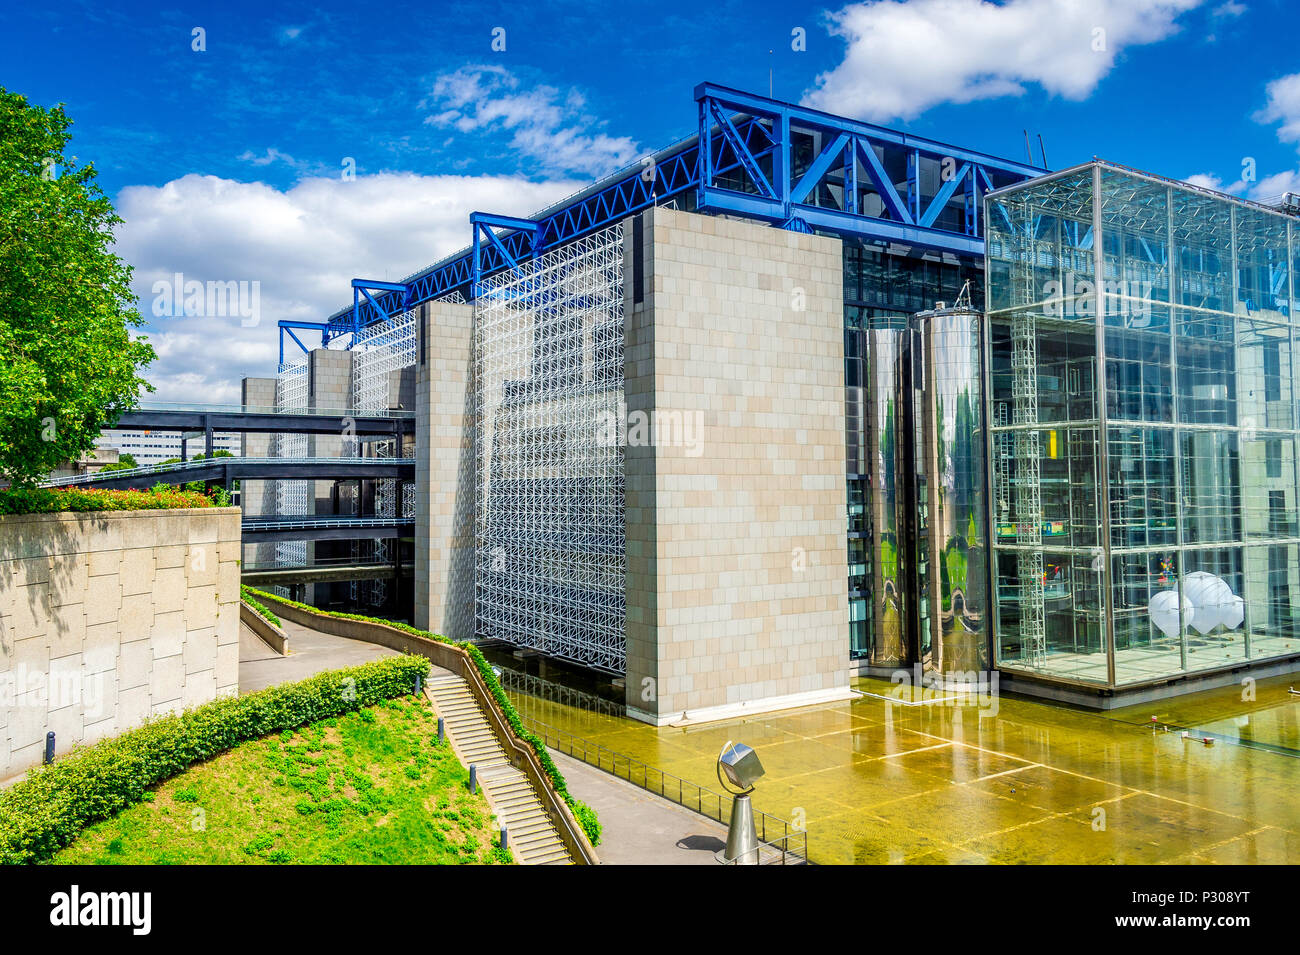 Cité des Sciences et de l'Industrie within the Parc de la Villette in Paris, France Stock Photo